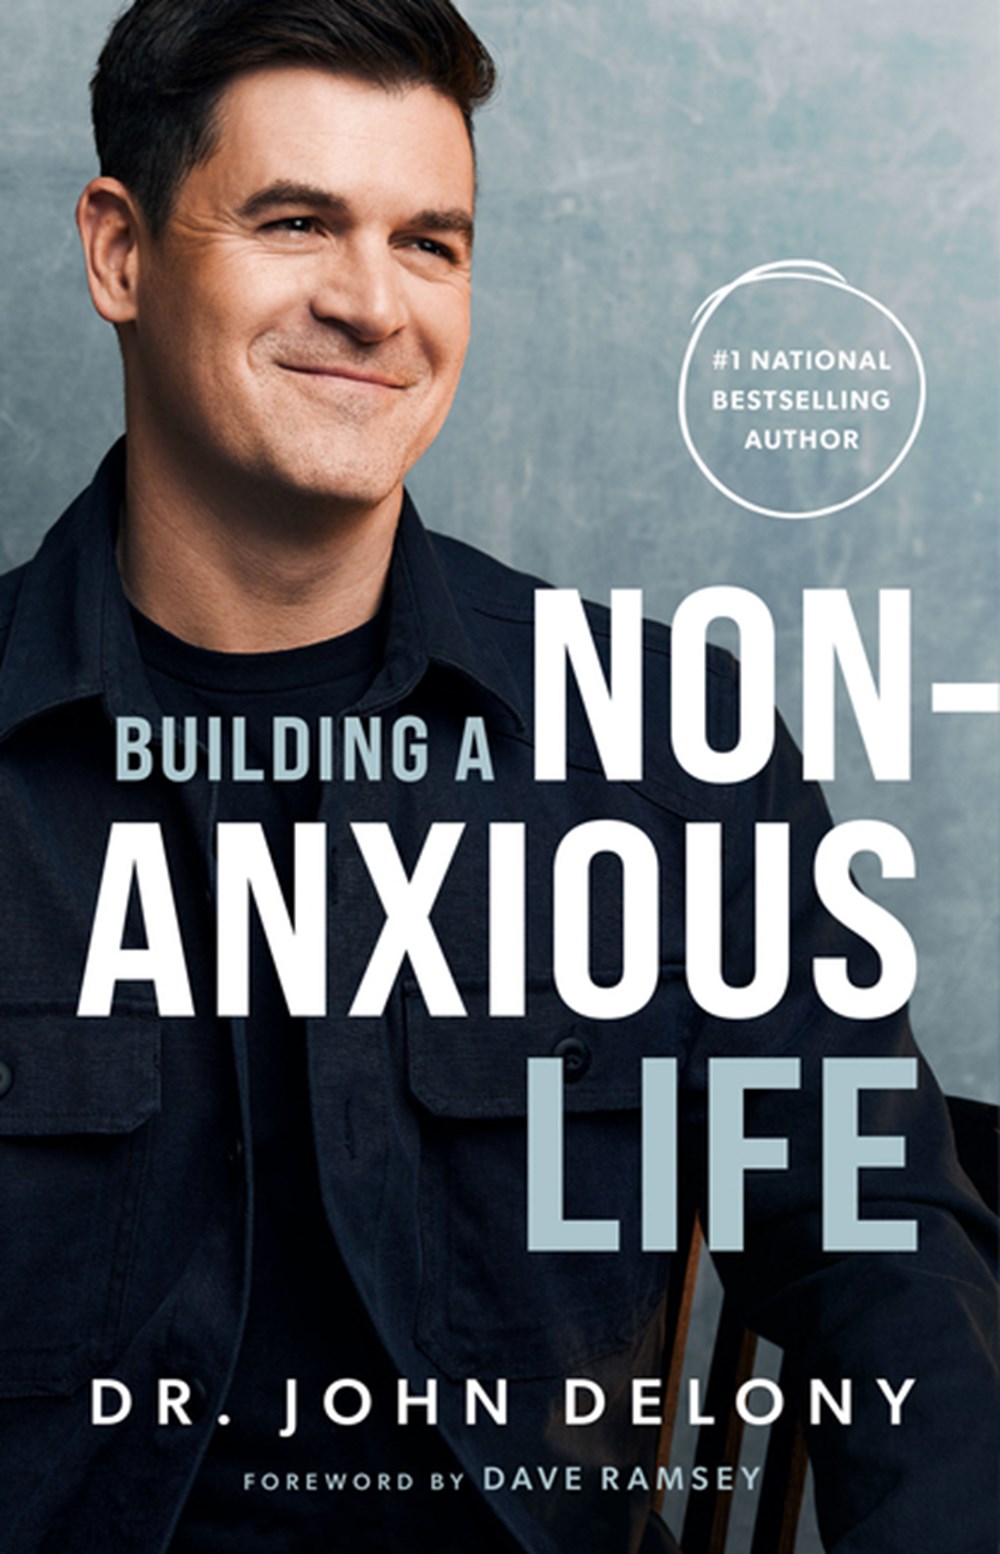 Building a Non-Anxious Life